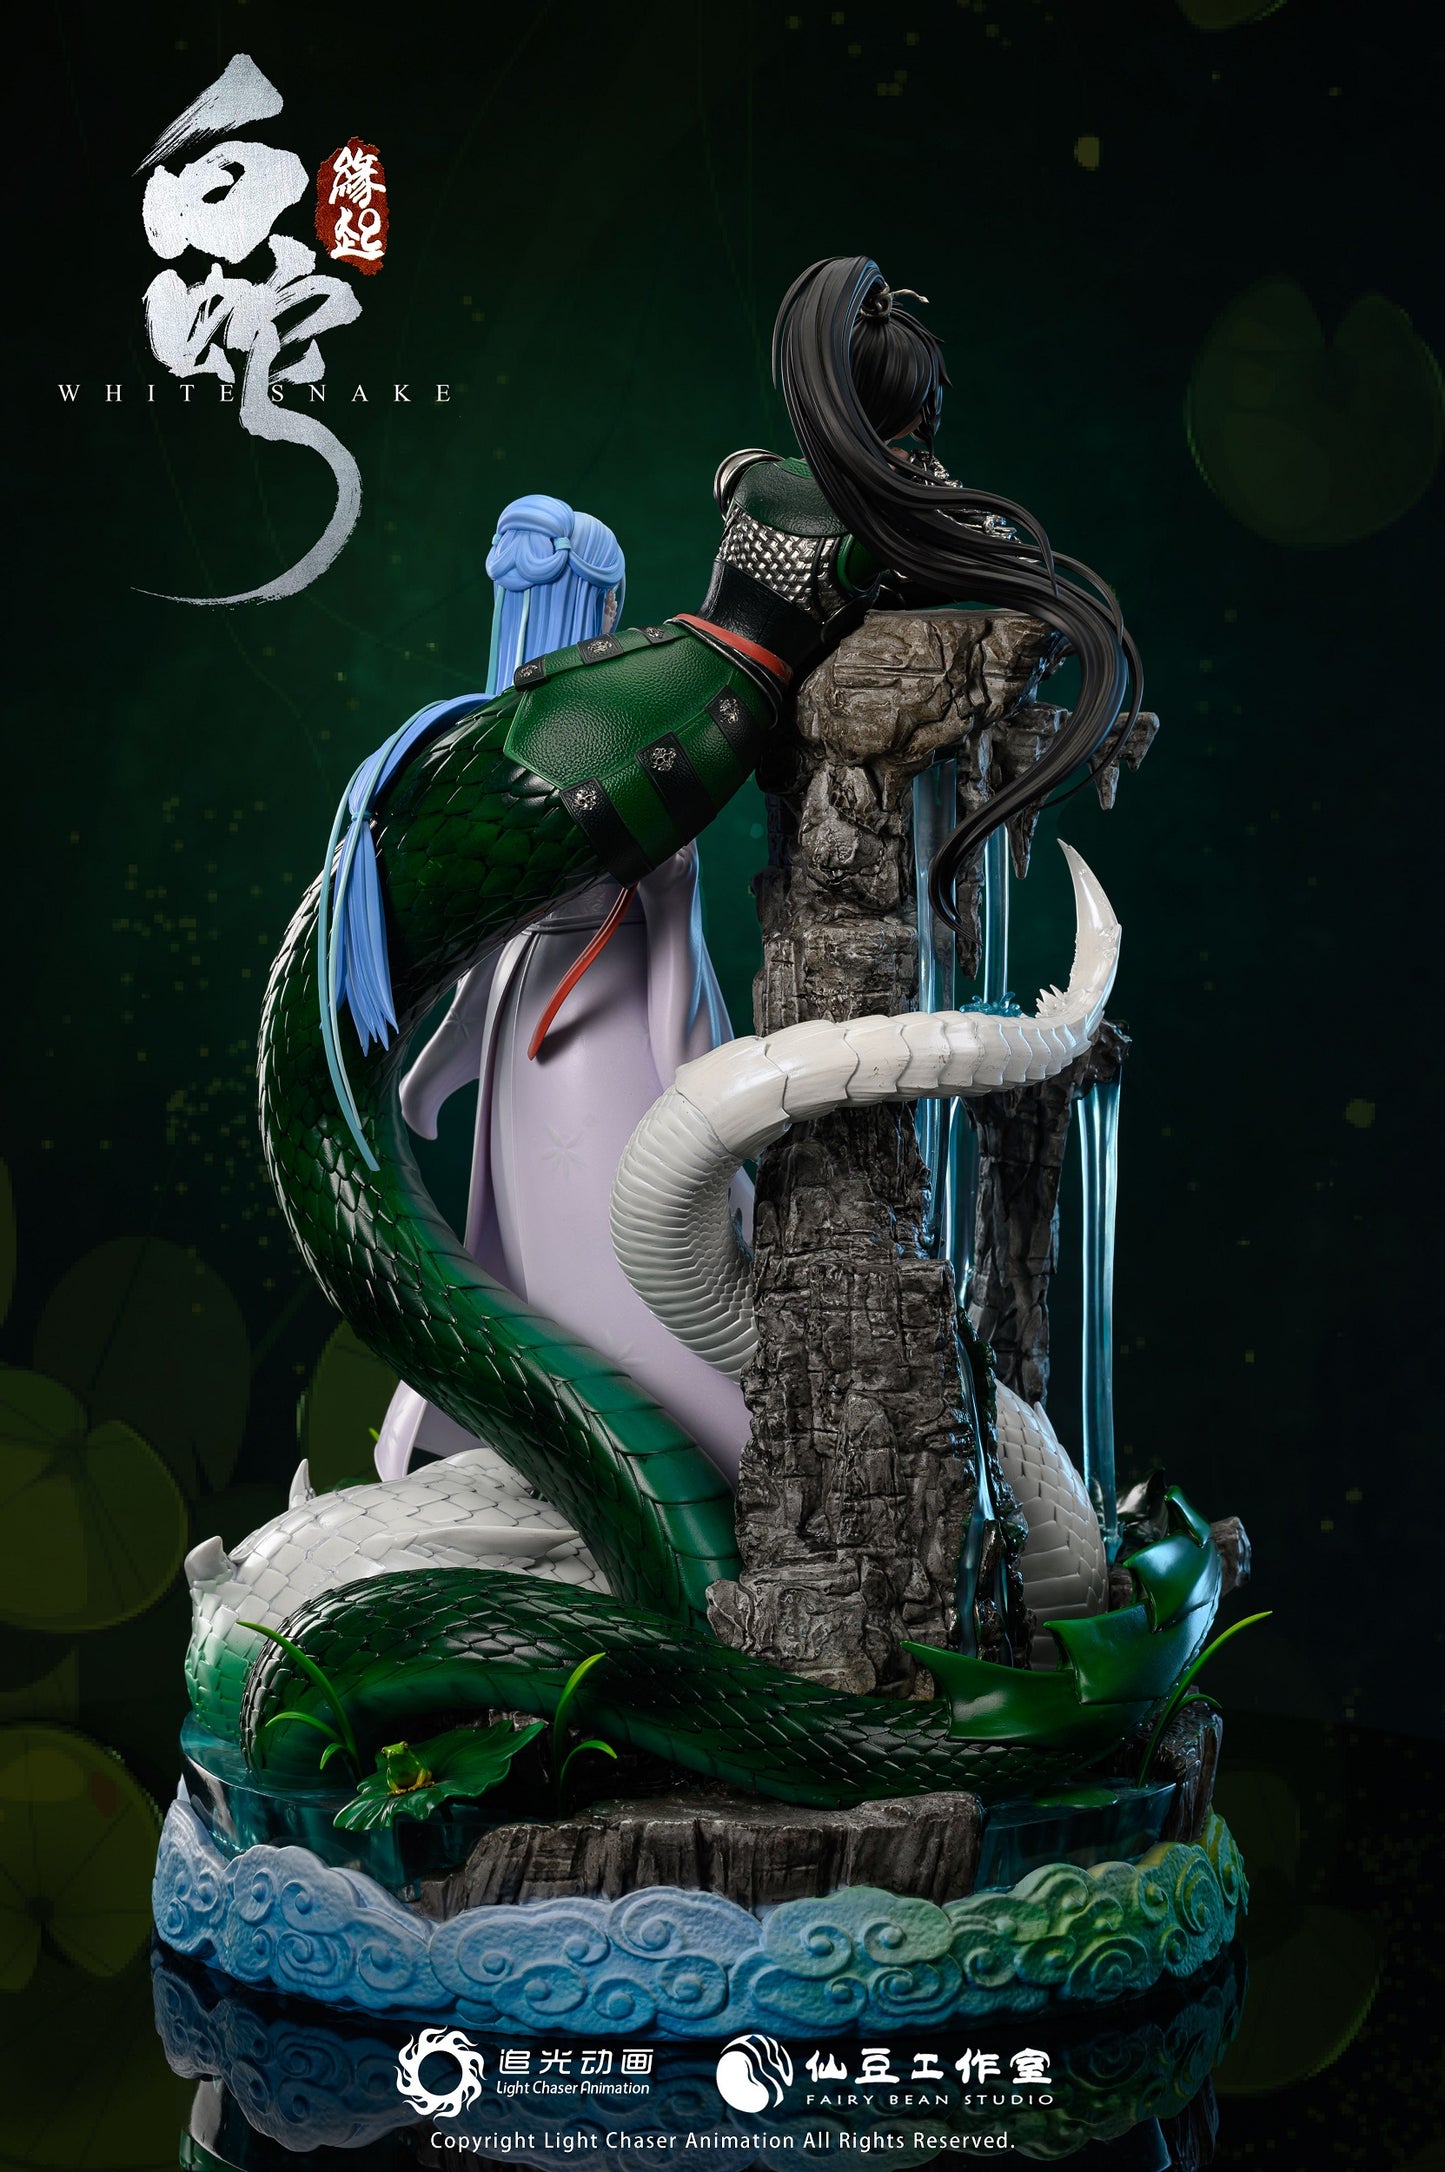 Fairy Bean Studio - White Snake (Licensed) [PRE-ORDER]